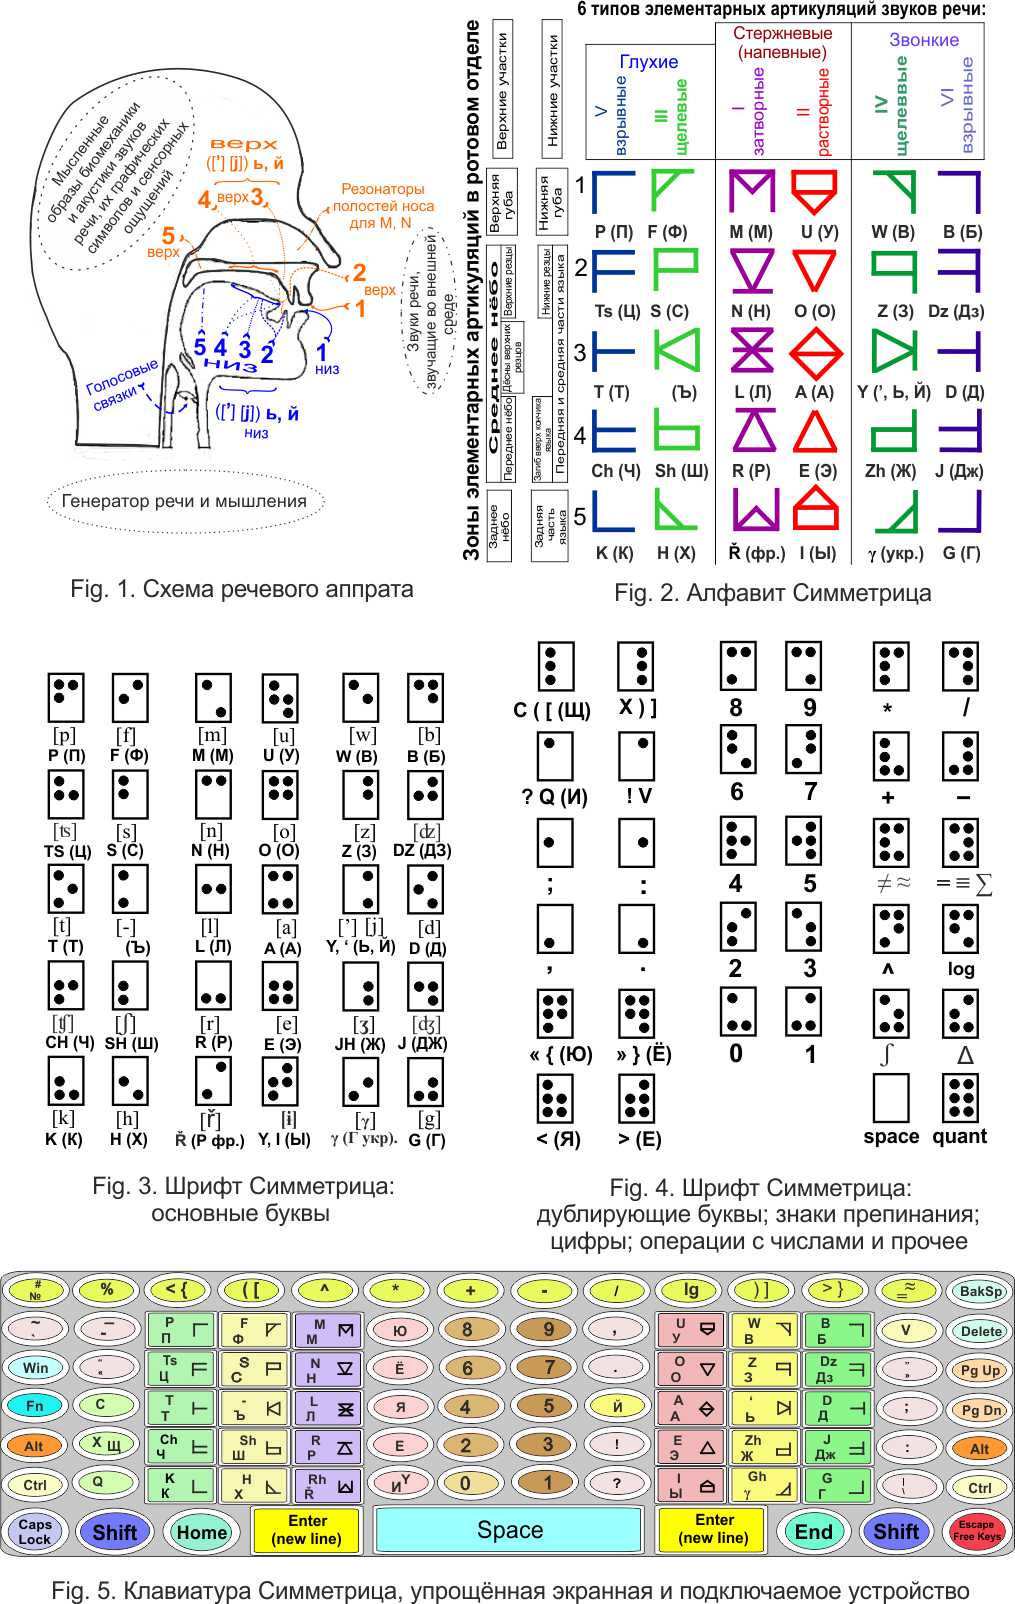 Schema de articulare a sunetelor vorbirii; Alfabetul simetric și fontul cu puncte simetrice